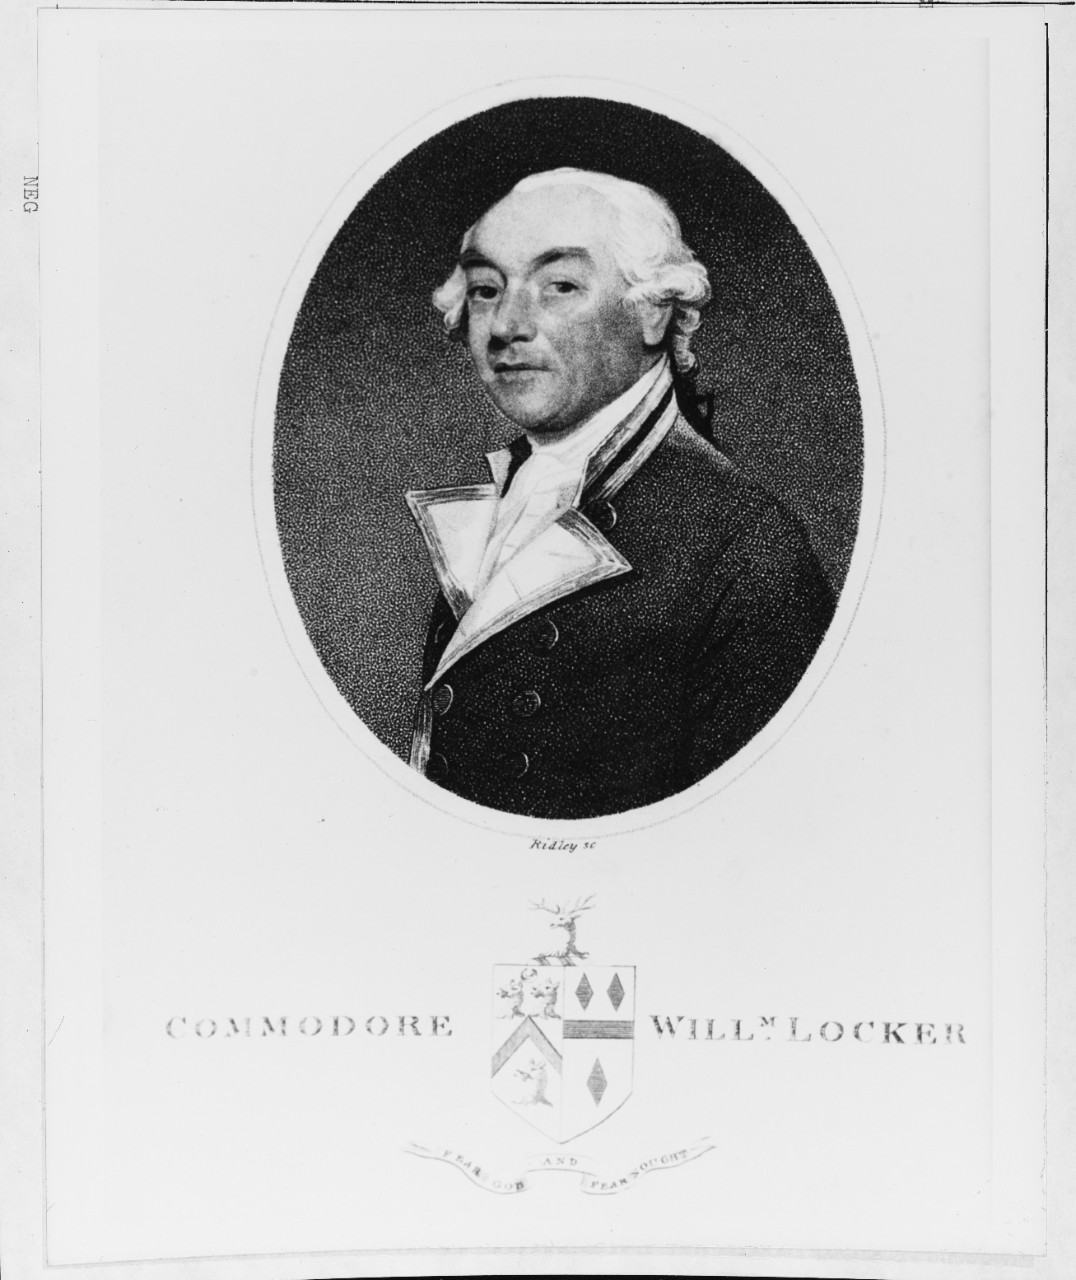 William Locker (1731-1800), Royal Navy Officer